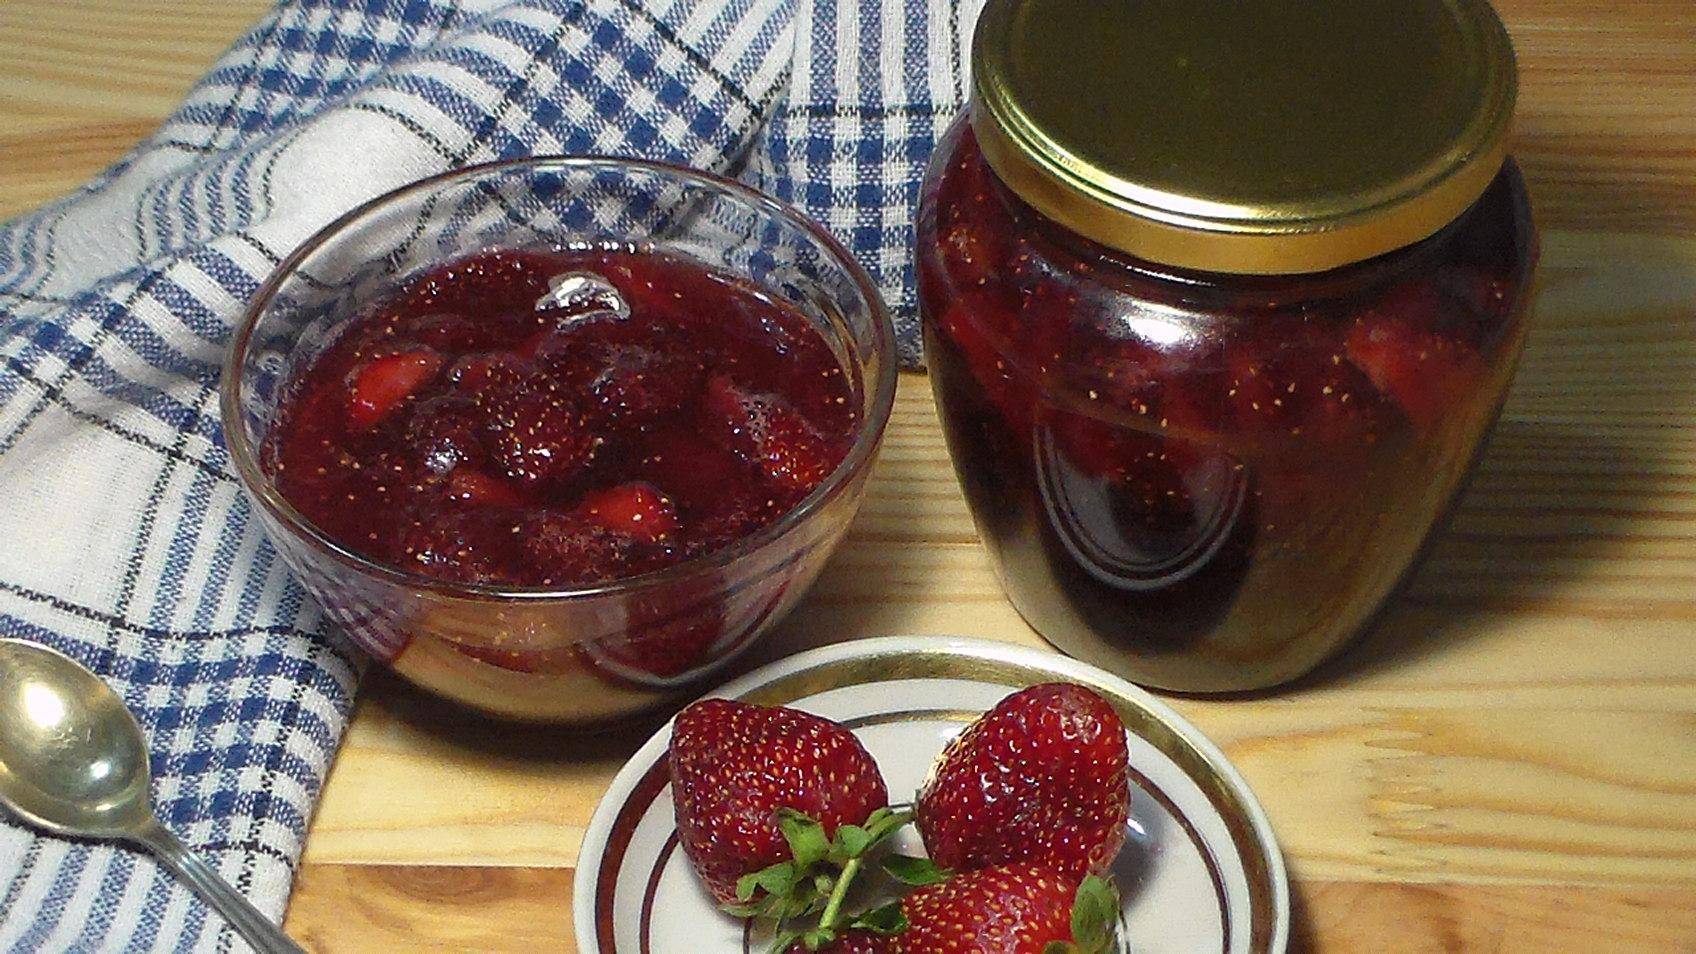 Клубничное варенье с целыми ягодами – 7 рецептов варенья (виктория) на зиму